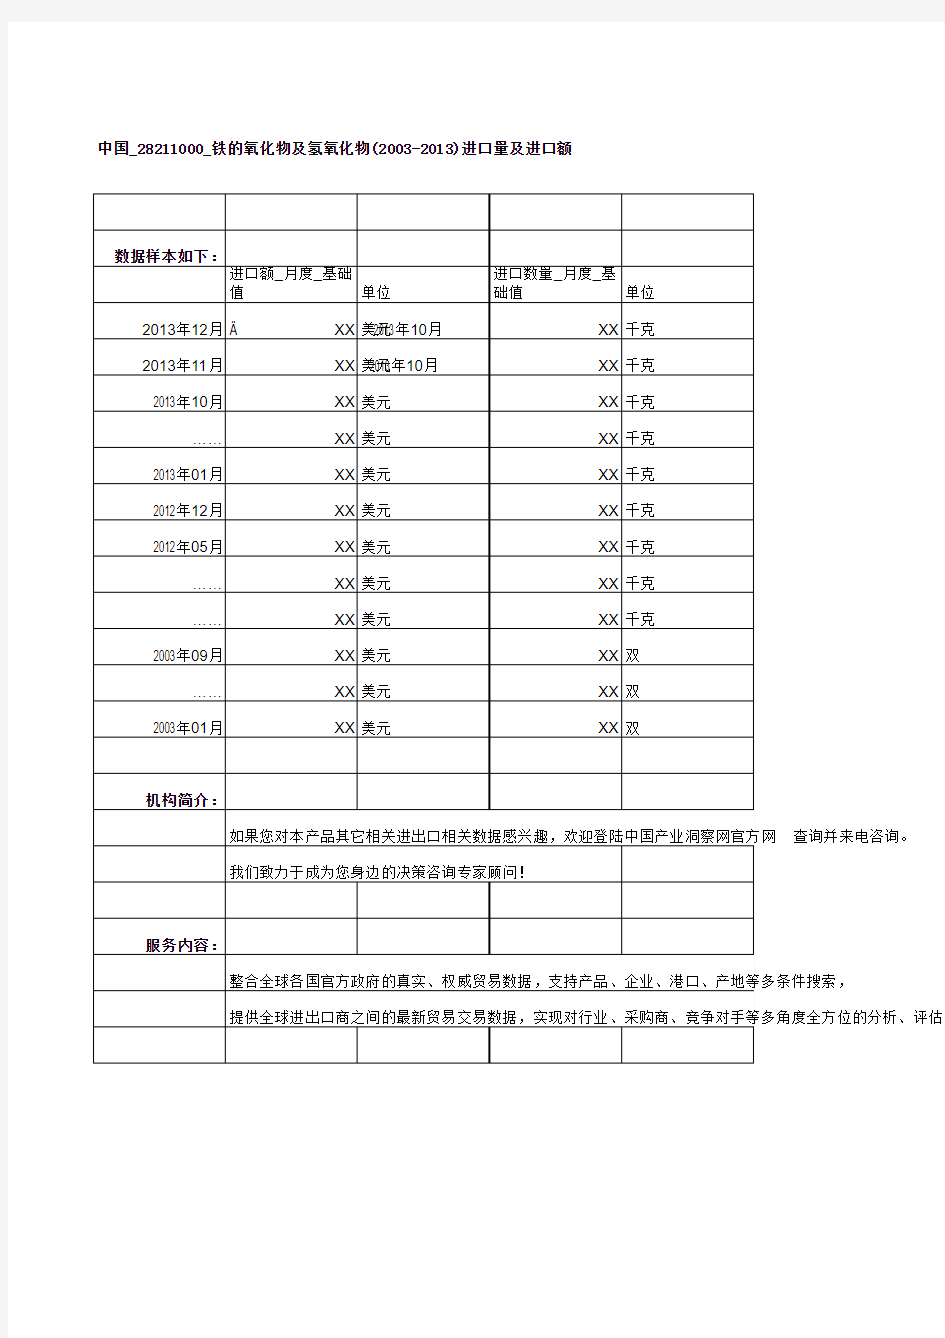 中国_28211000_铁的氧化物及氢氧化物(2003-2013)进口量及进口额